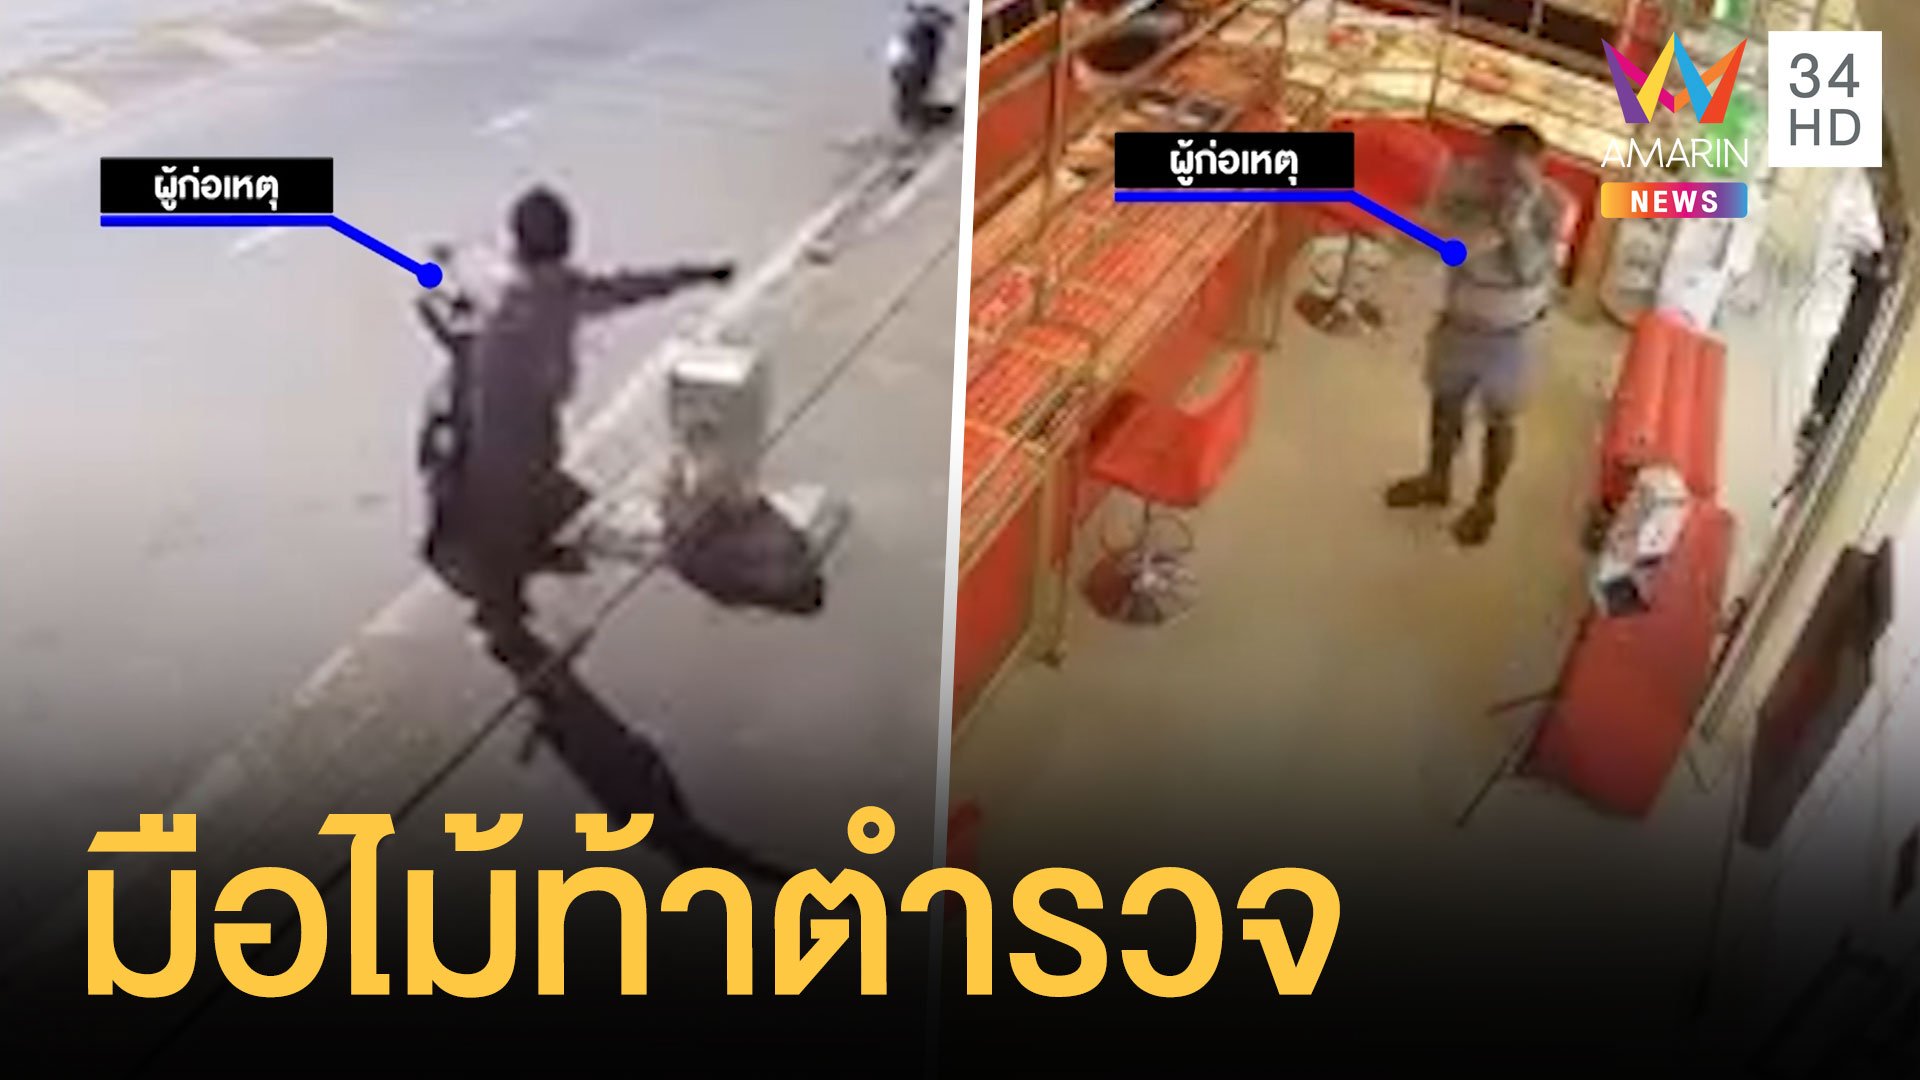 หนุ่มหัวร้อนถือไม้ท้าตำรวจในร้านทอง  | ข่าวเที่ยงอมรินทร์ | 28 พ.ย. 64 | AMARIN TVHD34